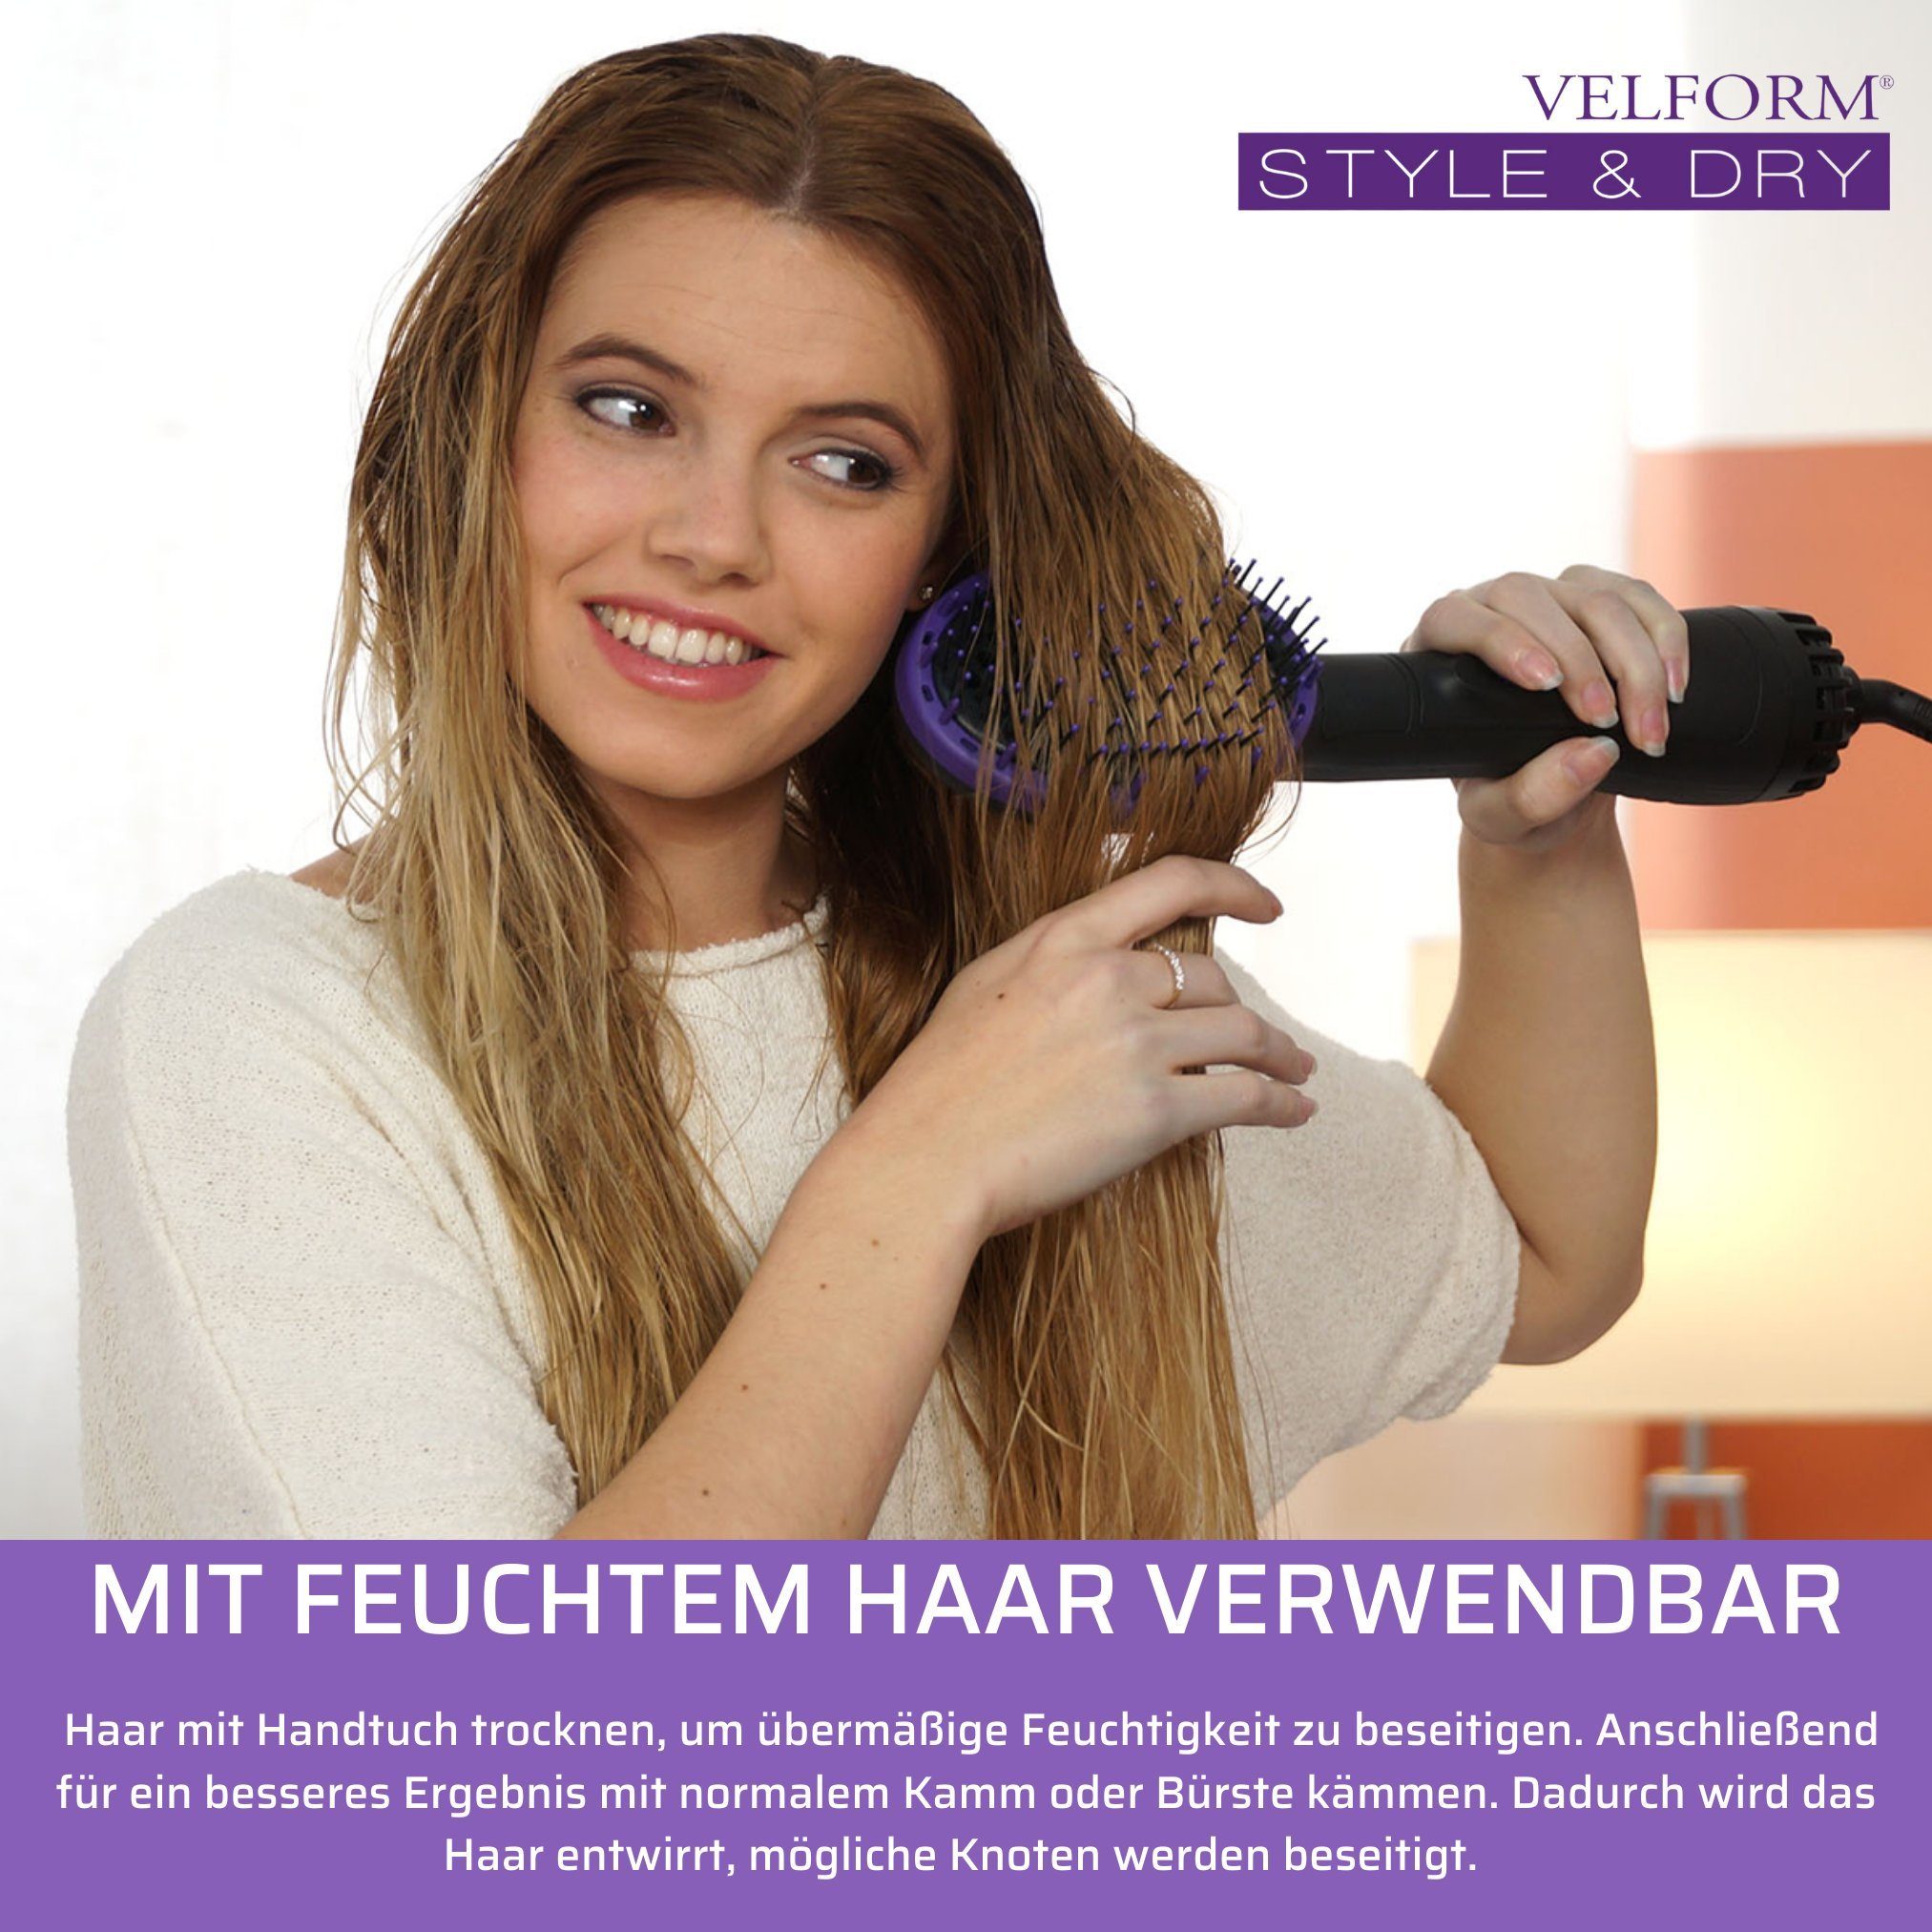 Velform®️ Velform® und in Style 2 in Dry, 1000 Haartrockner Bürste Watt & einem, 1 Warmluftbürste